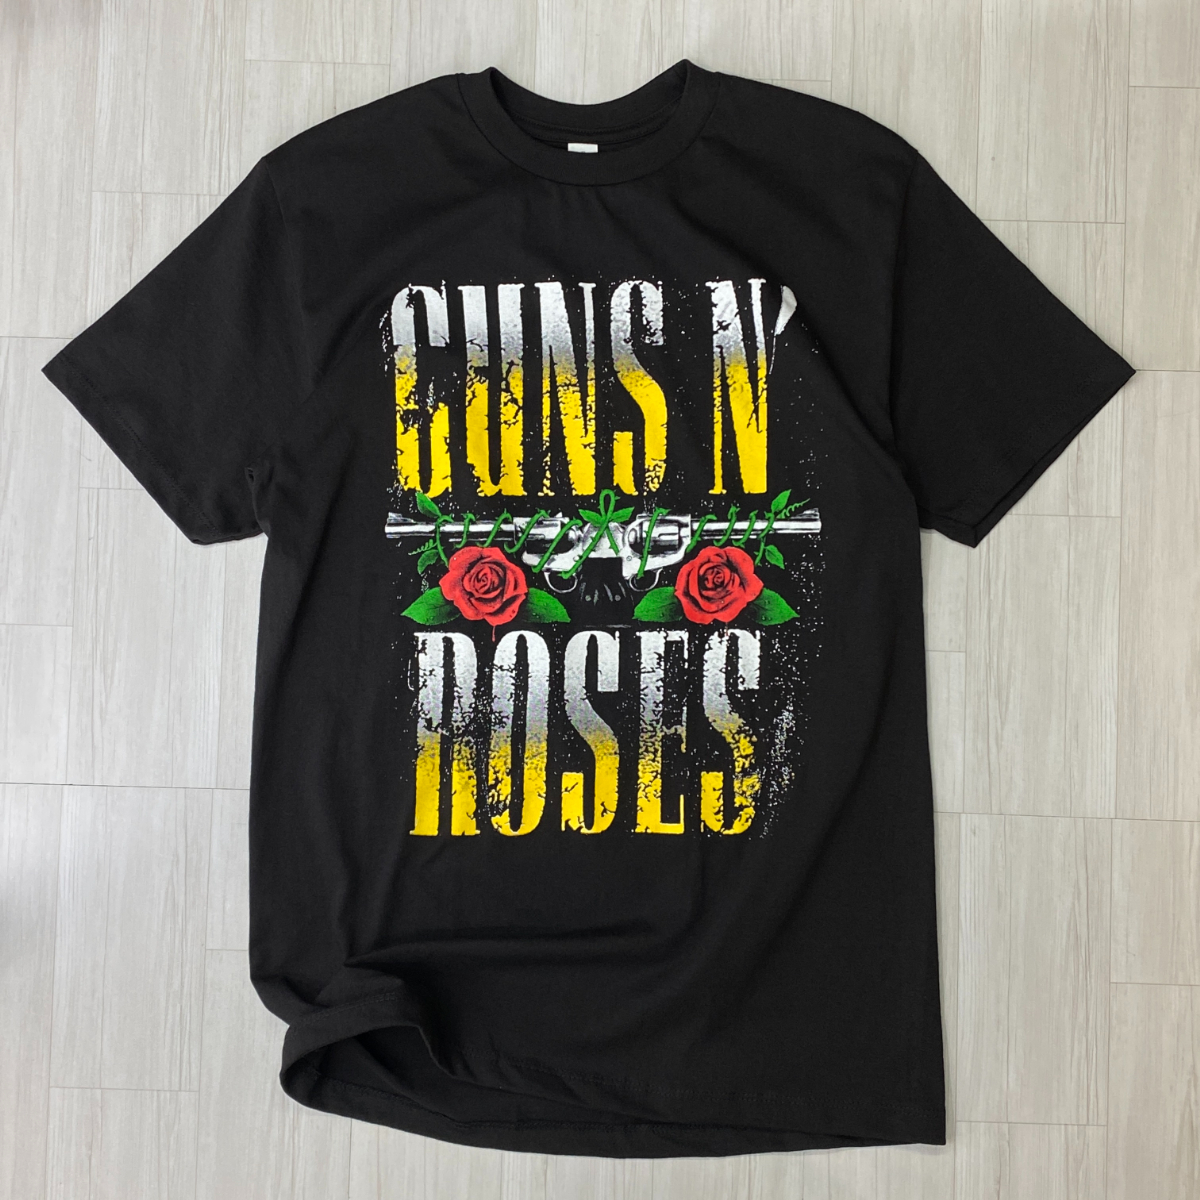 ロサンゼルス発 【XL】 Guns N' Roses ガンズアンドローゼズ 半袖 ヘビーウェイト Tシャツ 黒 バンドT ロックバンド USA規格 ガンズ